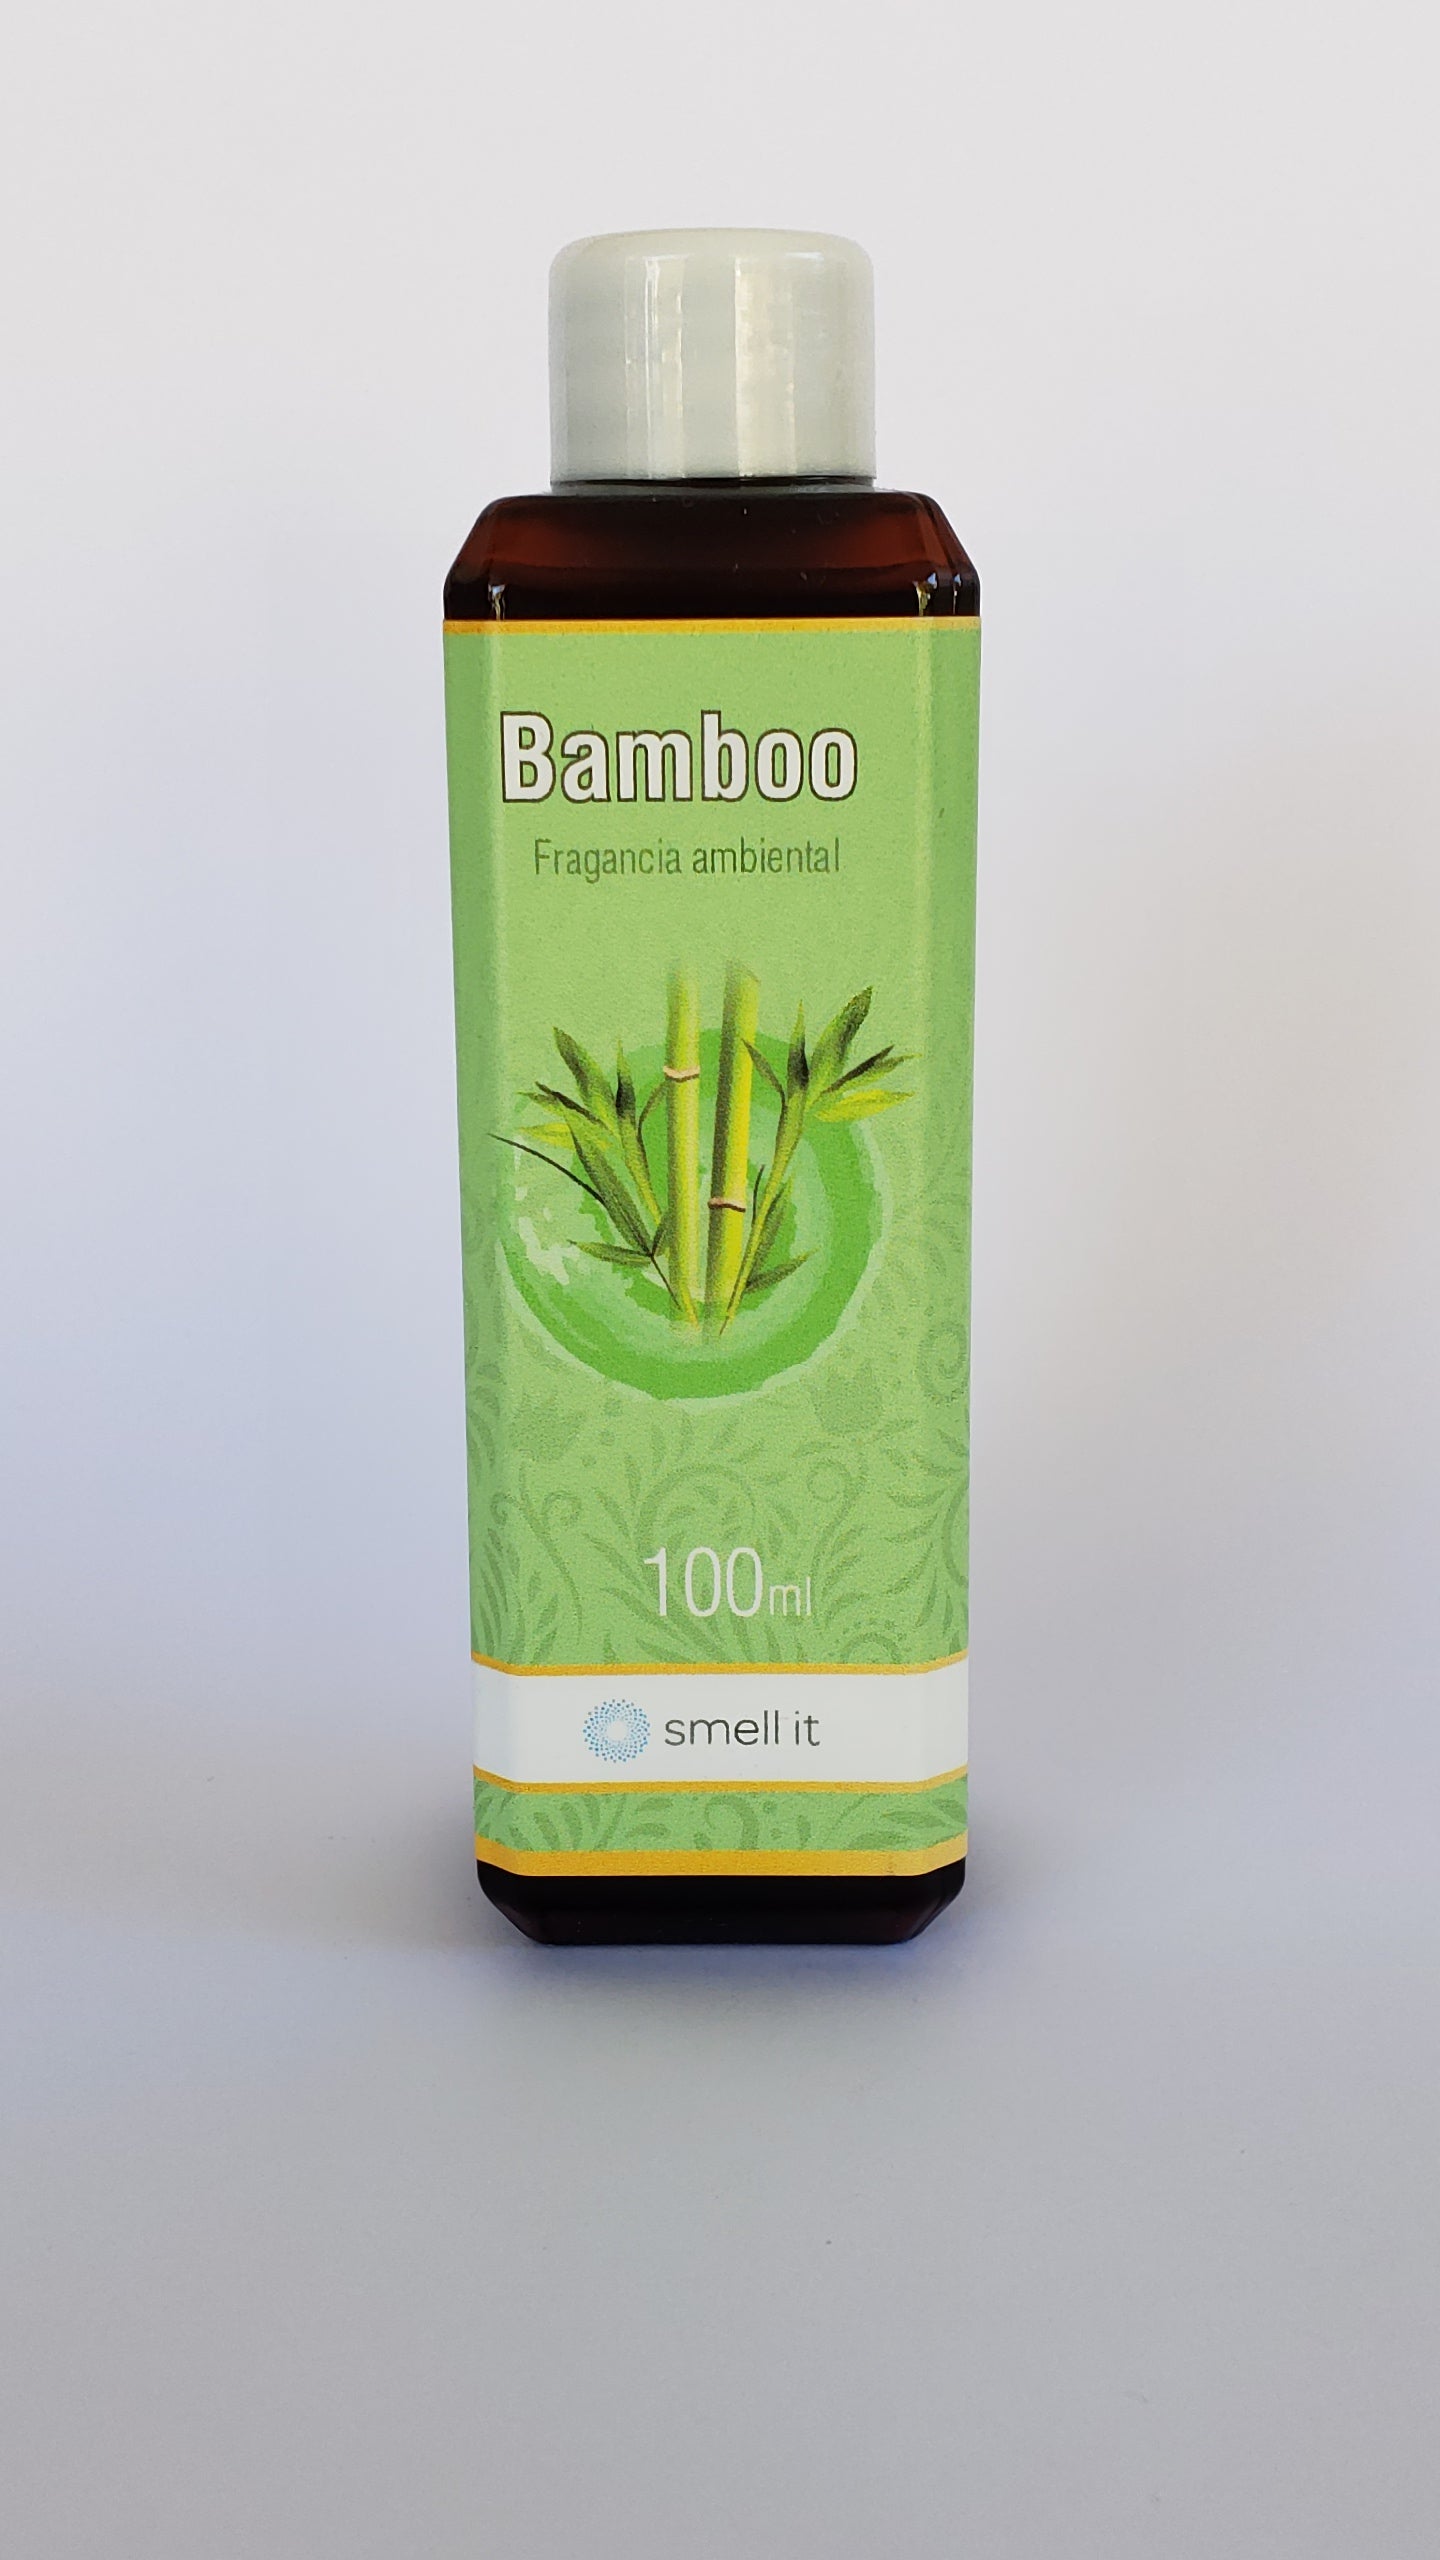 Fragancia Ambiental - Bamboo